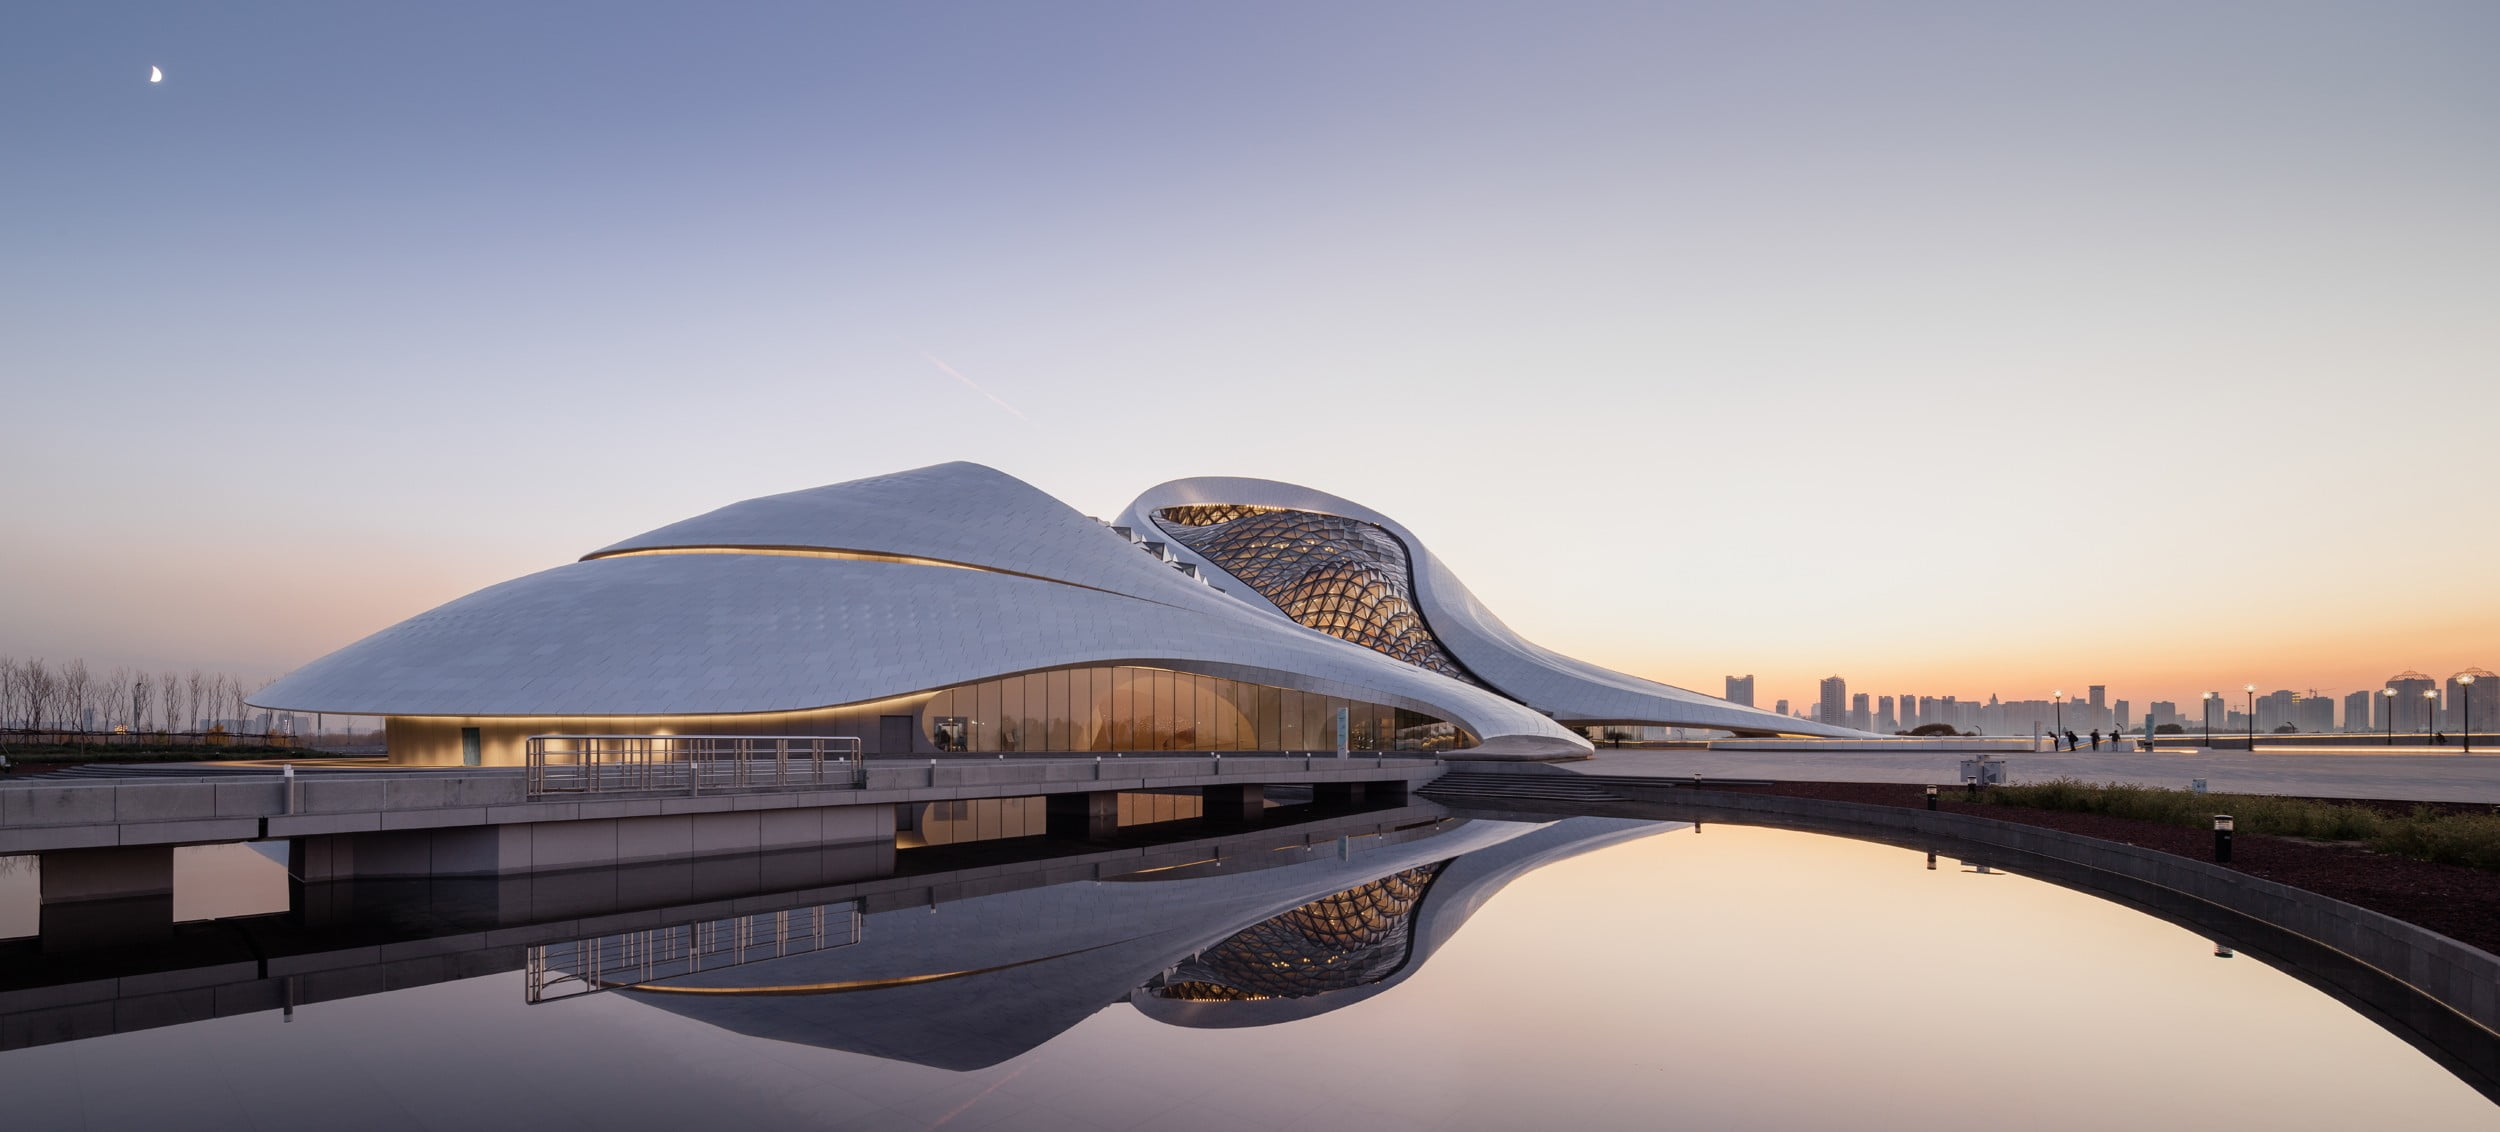 white concrete building, Harbin Opera House, Asian architecture